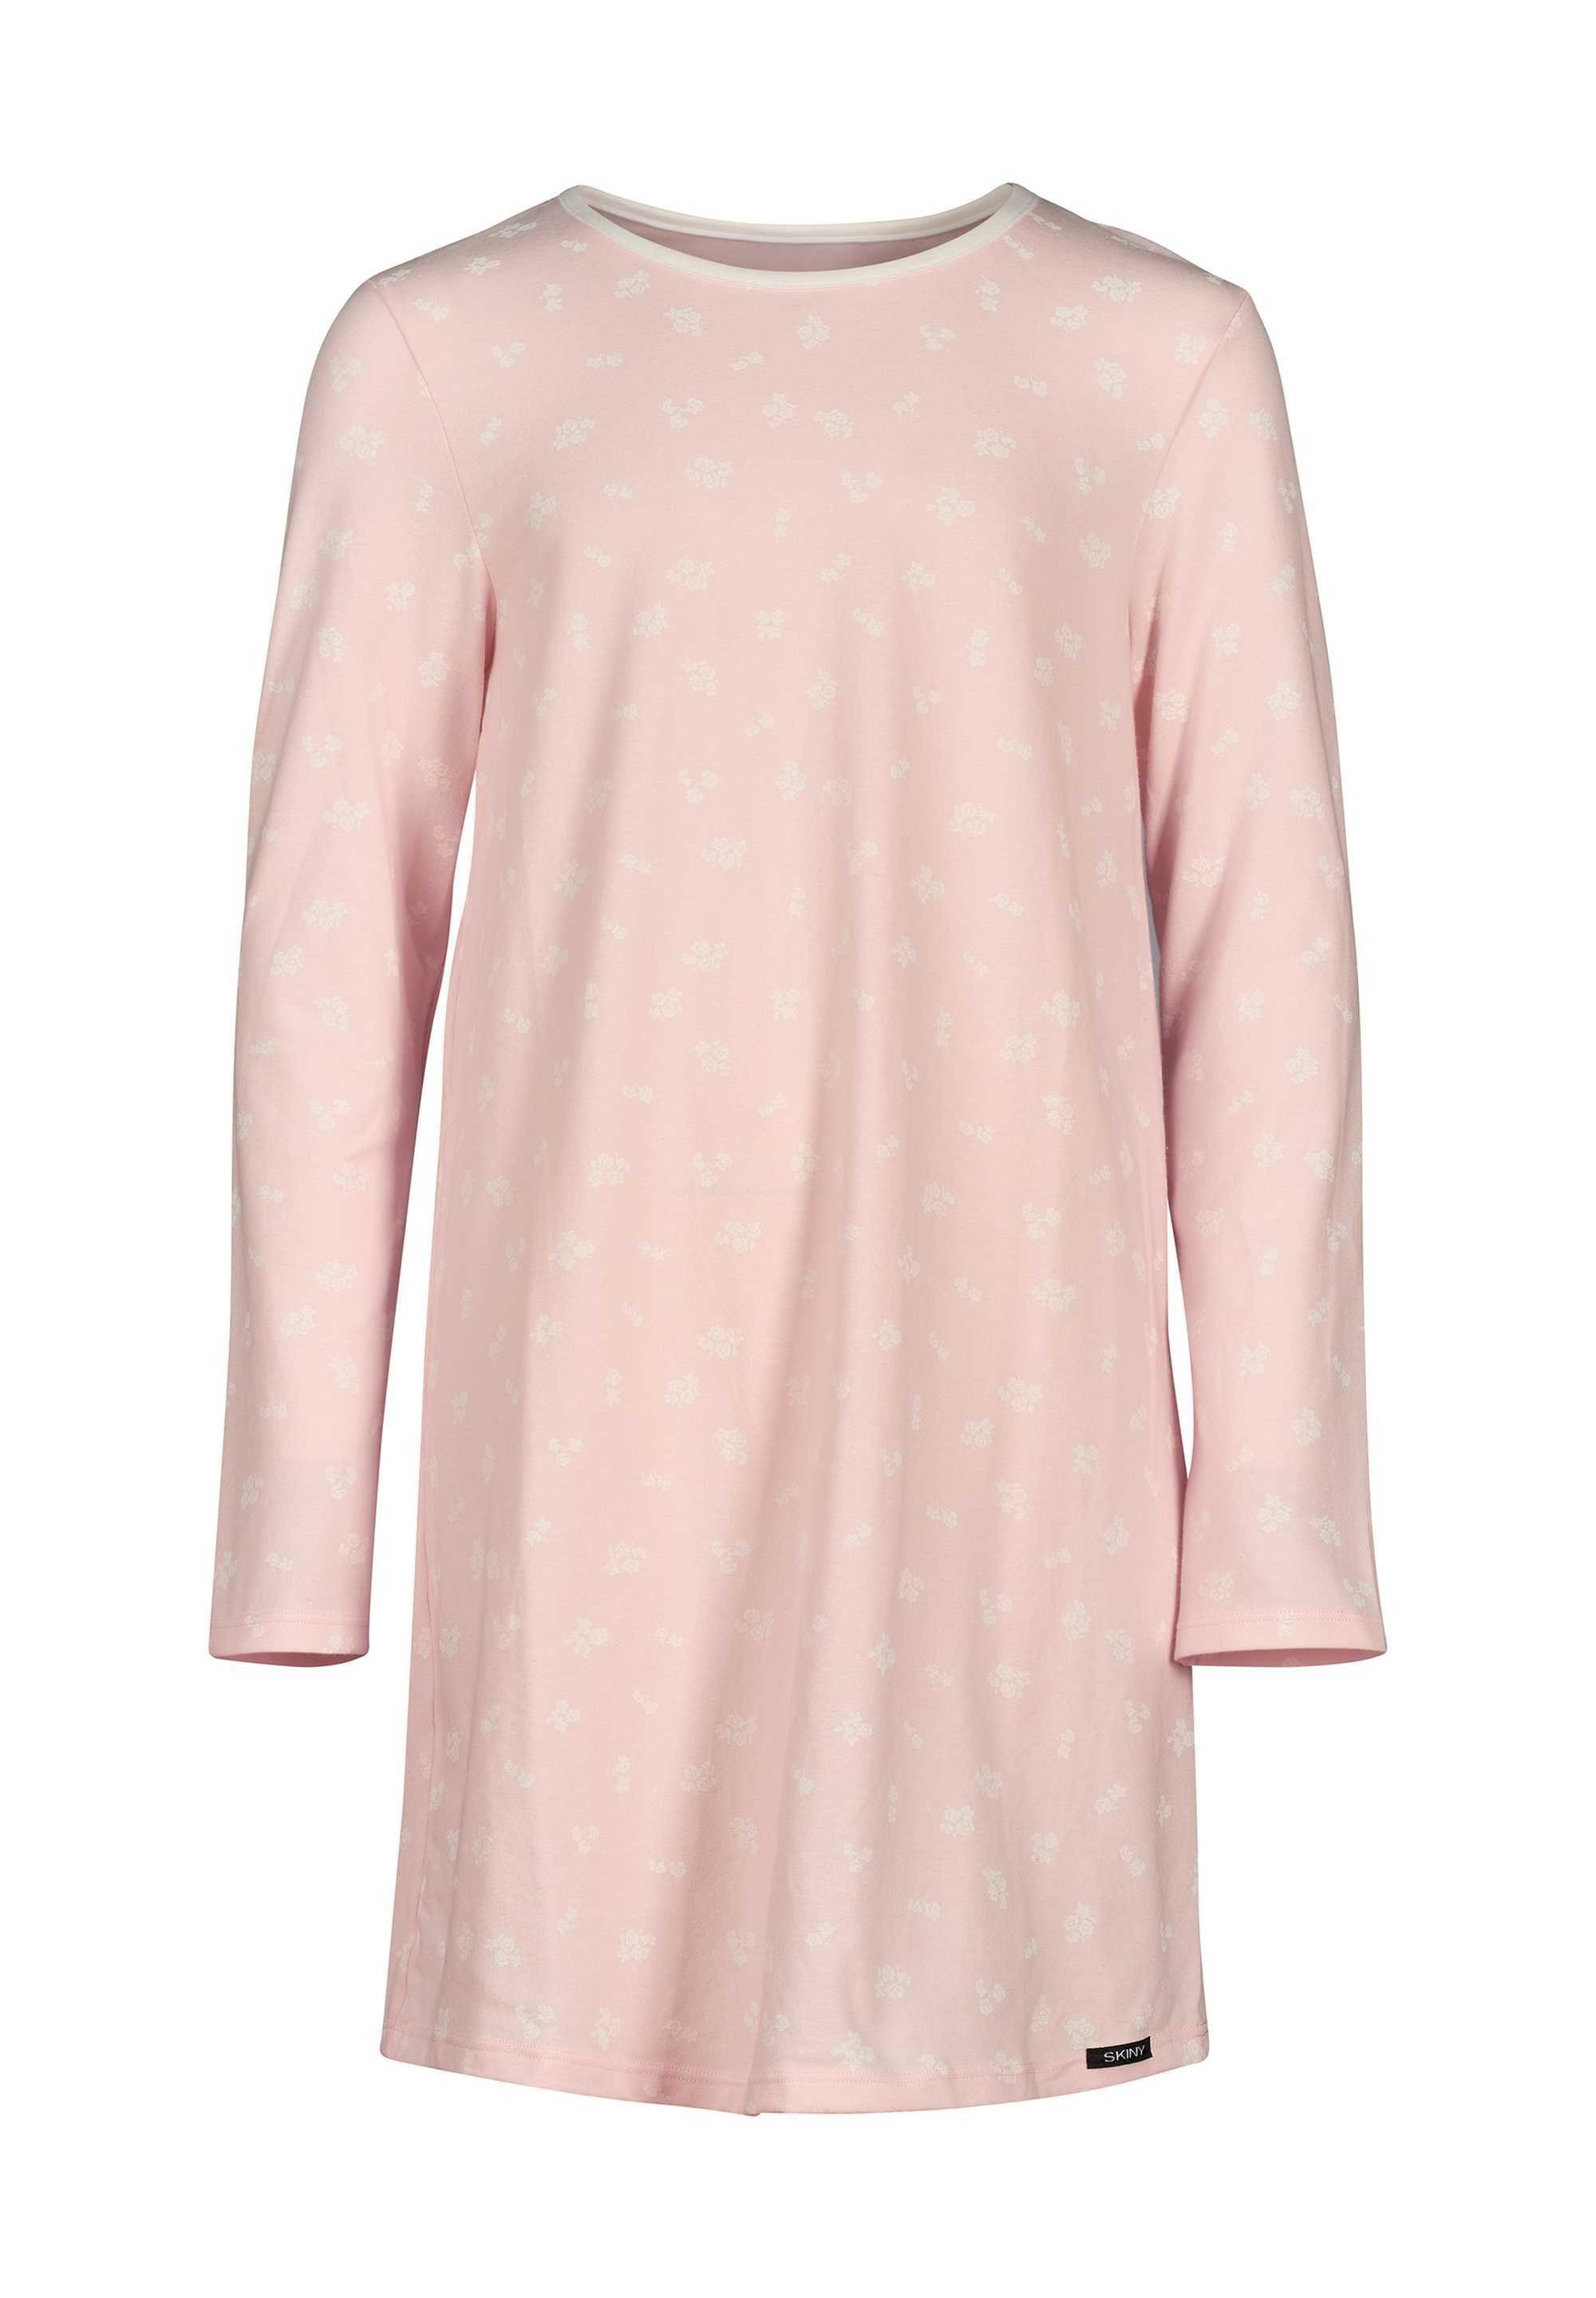 Skiny Langarm, Nachthemd Kinder Mädchen - Sleepshirt, Pyjama Rosa